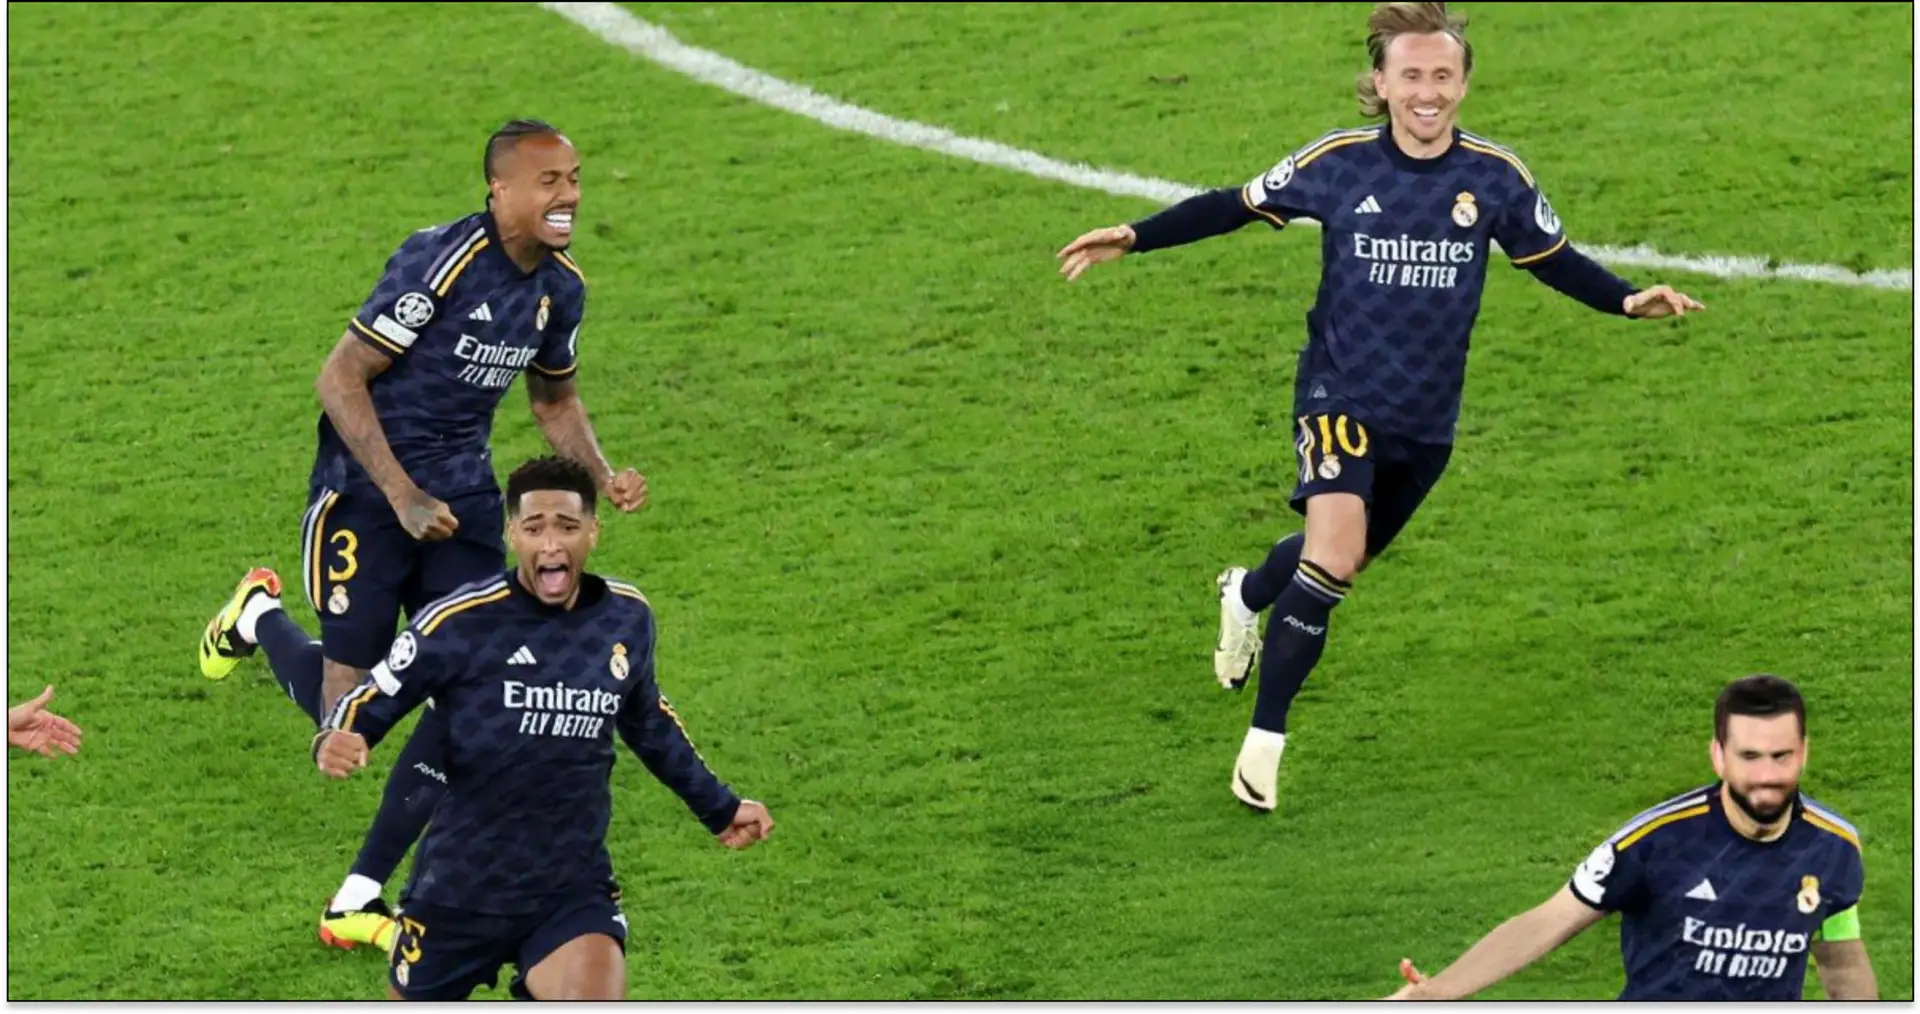 7 meilleures photos des joueurs du Real Madrid célébrant follement leur victoire à l'Etihad